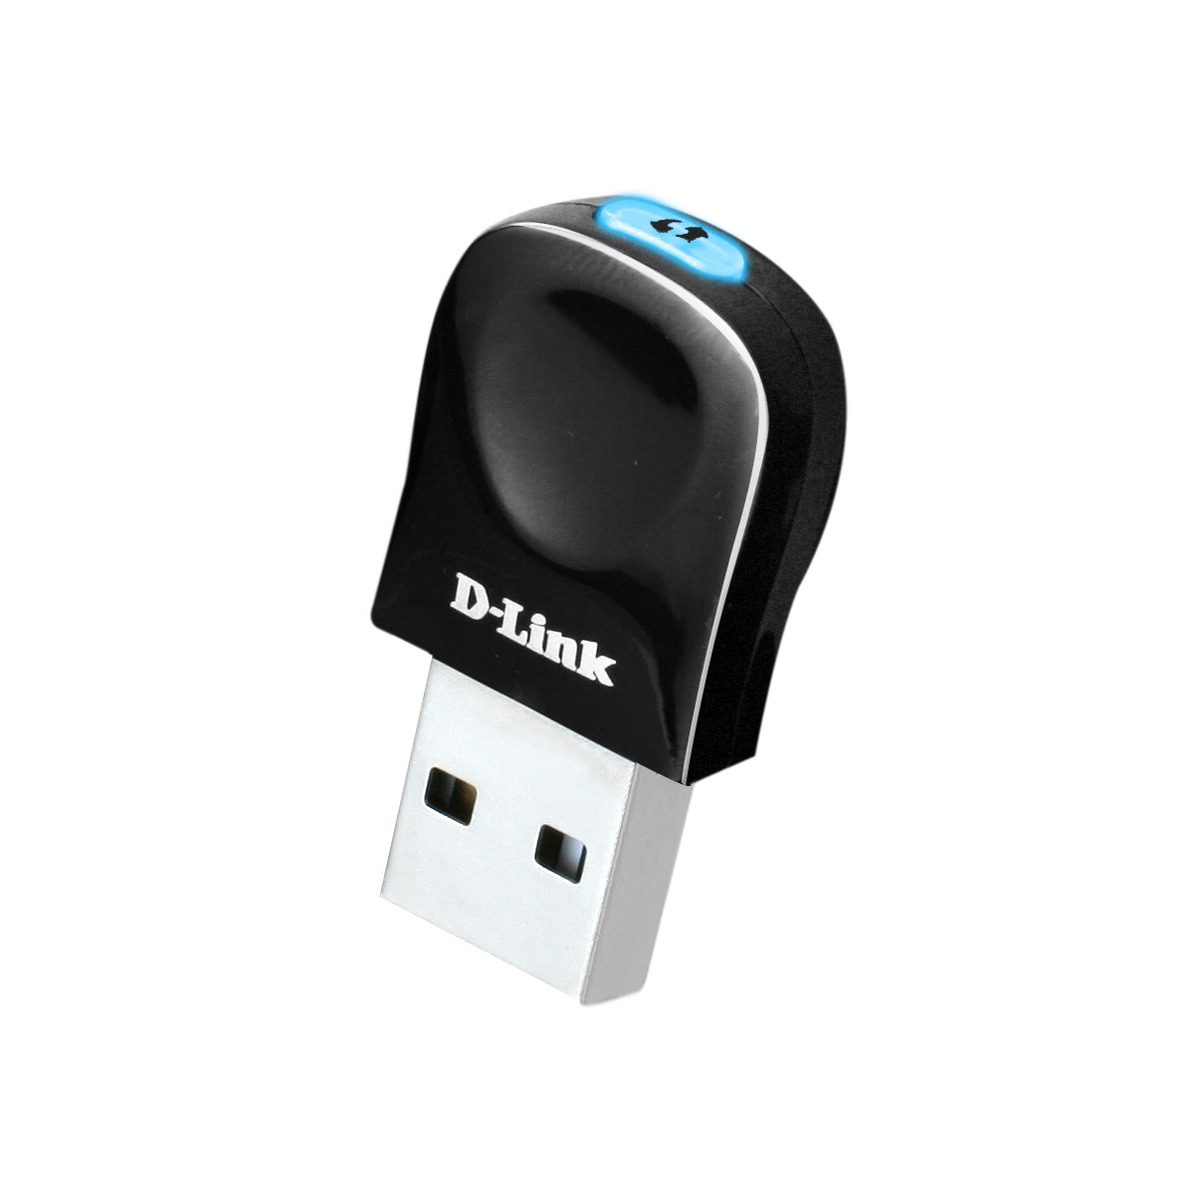 D-Link DWA-131 Clé USB nano Wireless N 300 Mbps – Votre partenaire